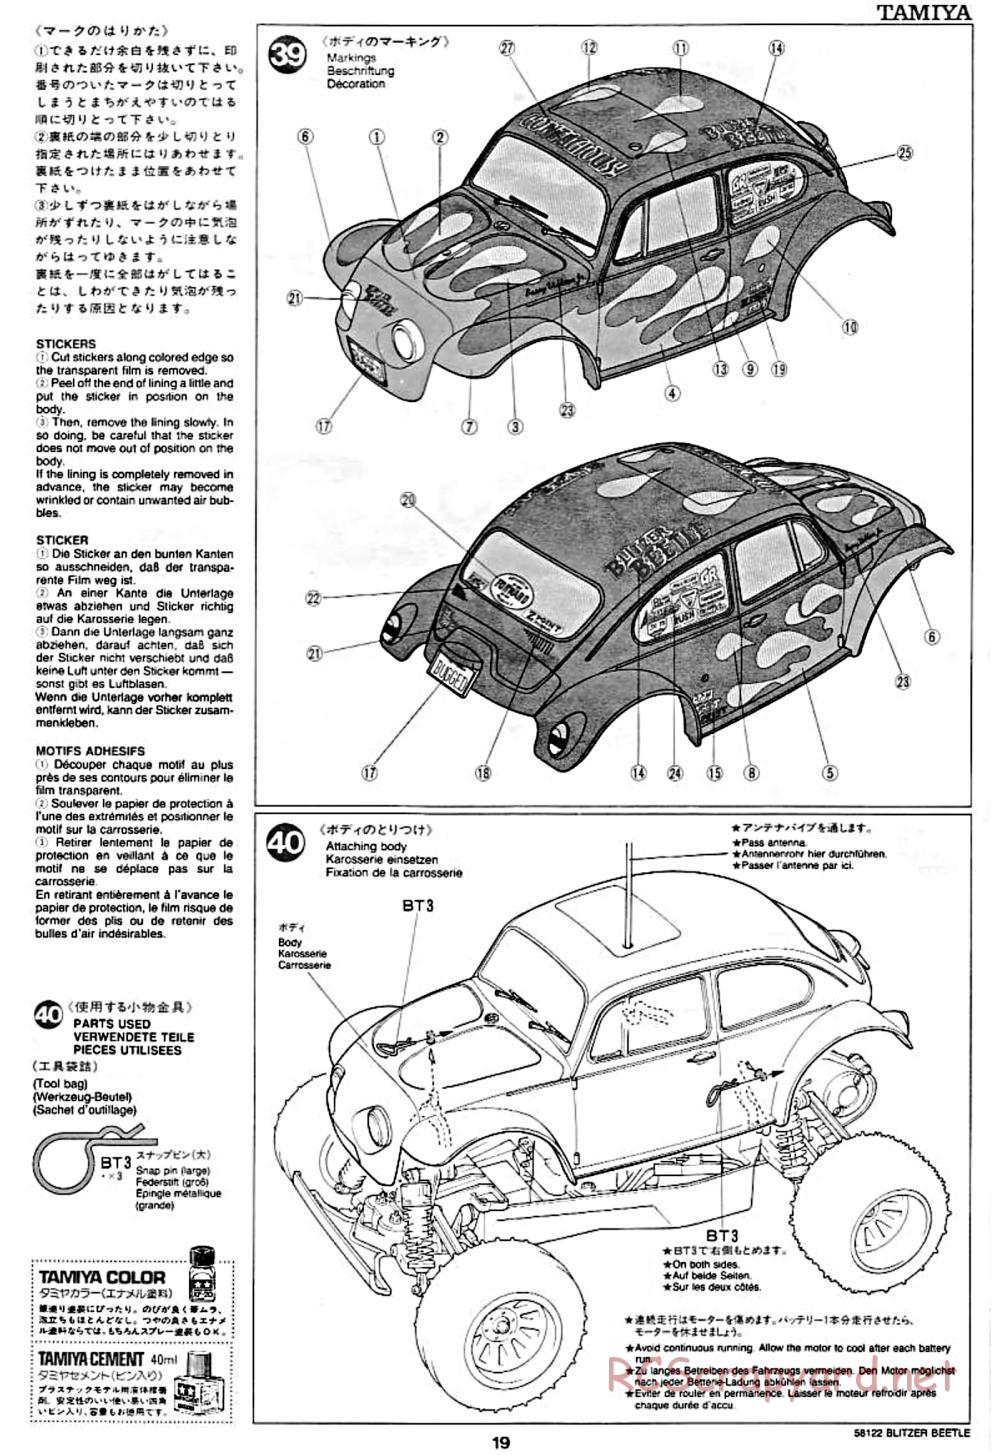 Tamiya - Blitzer Beetle Chassis - Manual - Page 19